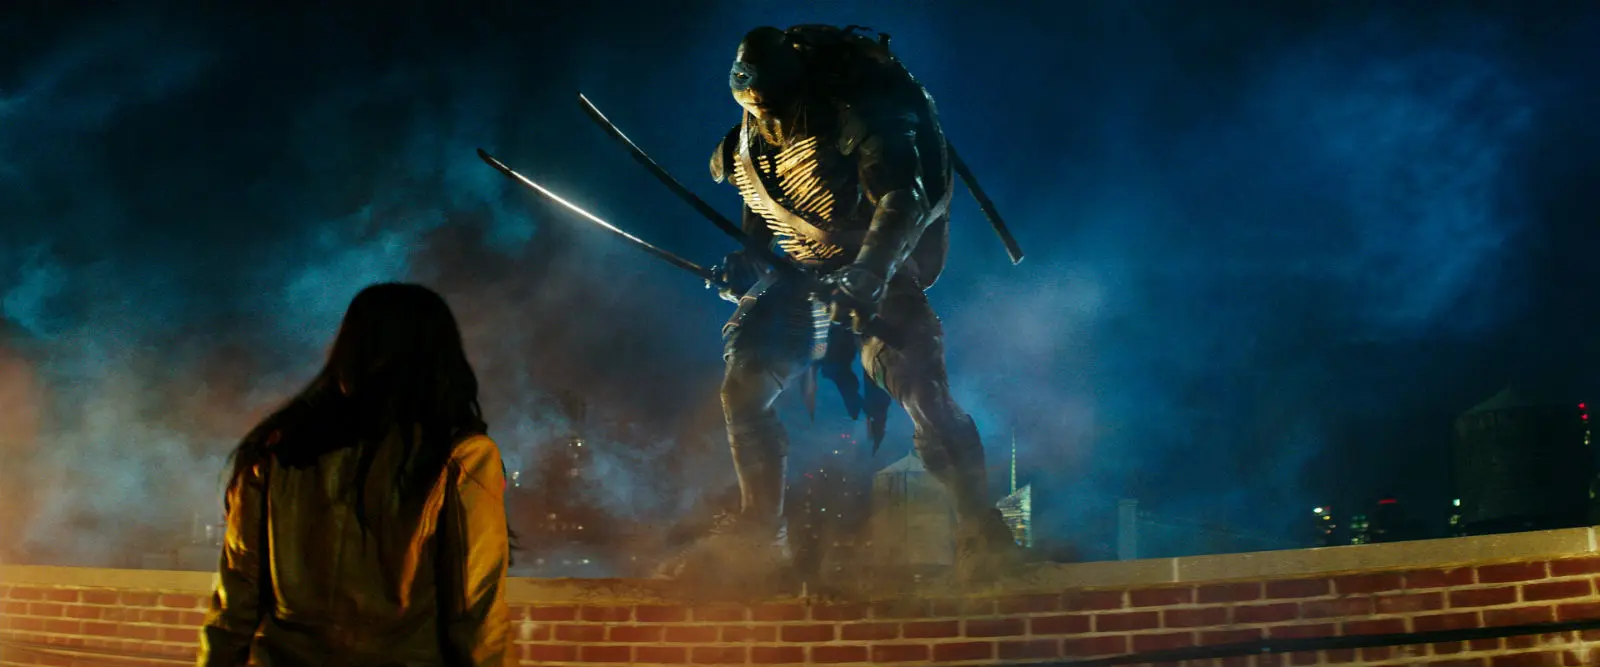 OBRAZEM: Novým fotkám ze Želv ninja dominuje Leonardo, Megan Fox a zbraně!